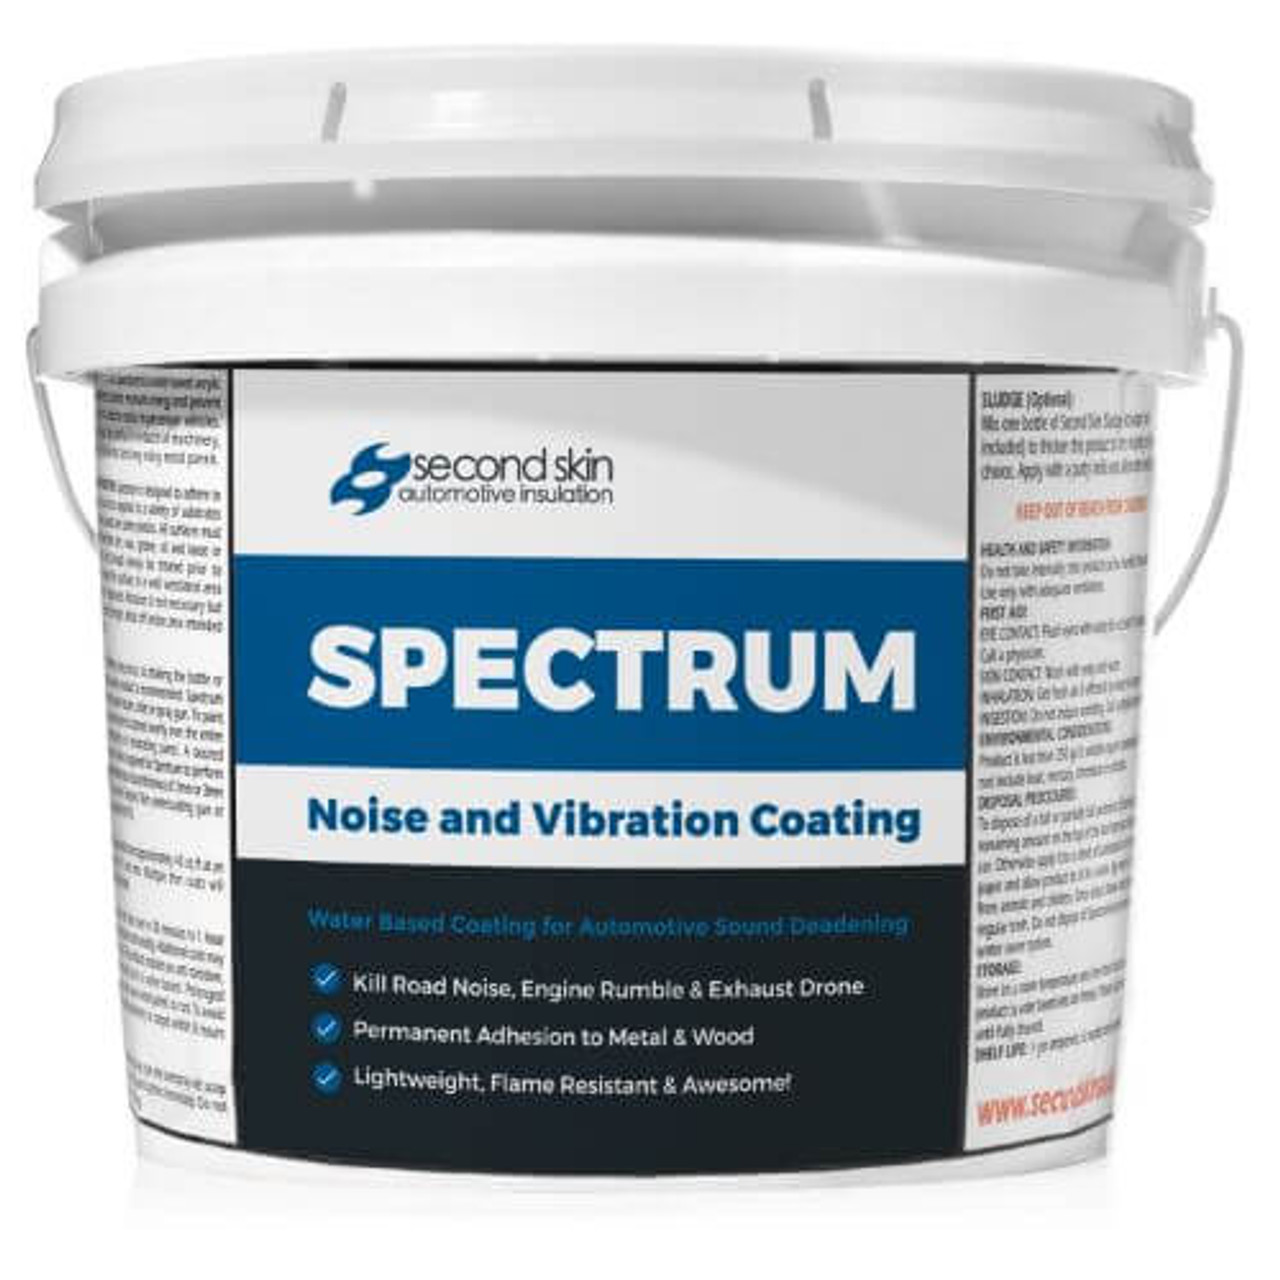 Spectrum: Automotive Sound Deadening Spray - Second Skin Audio